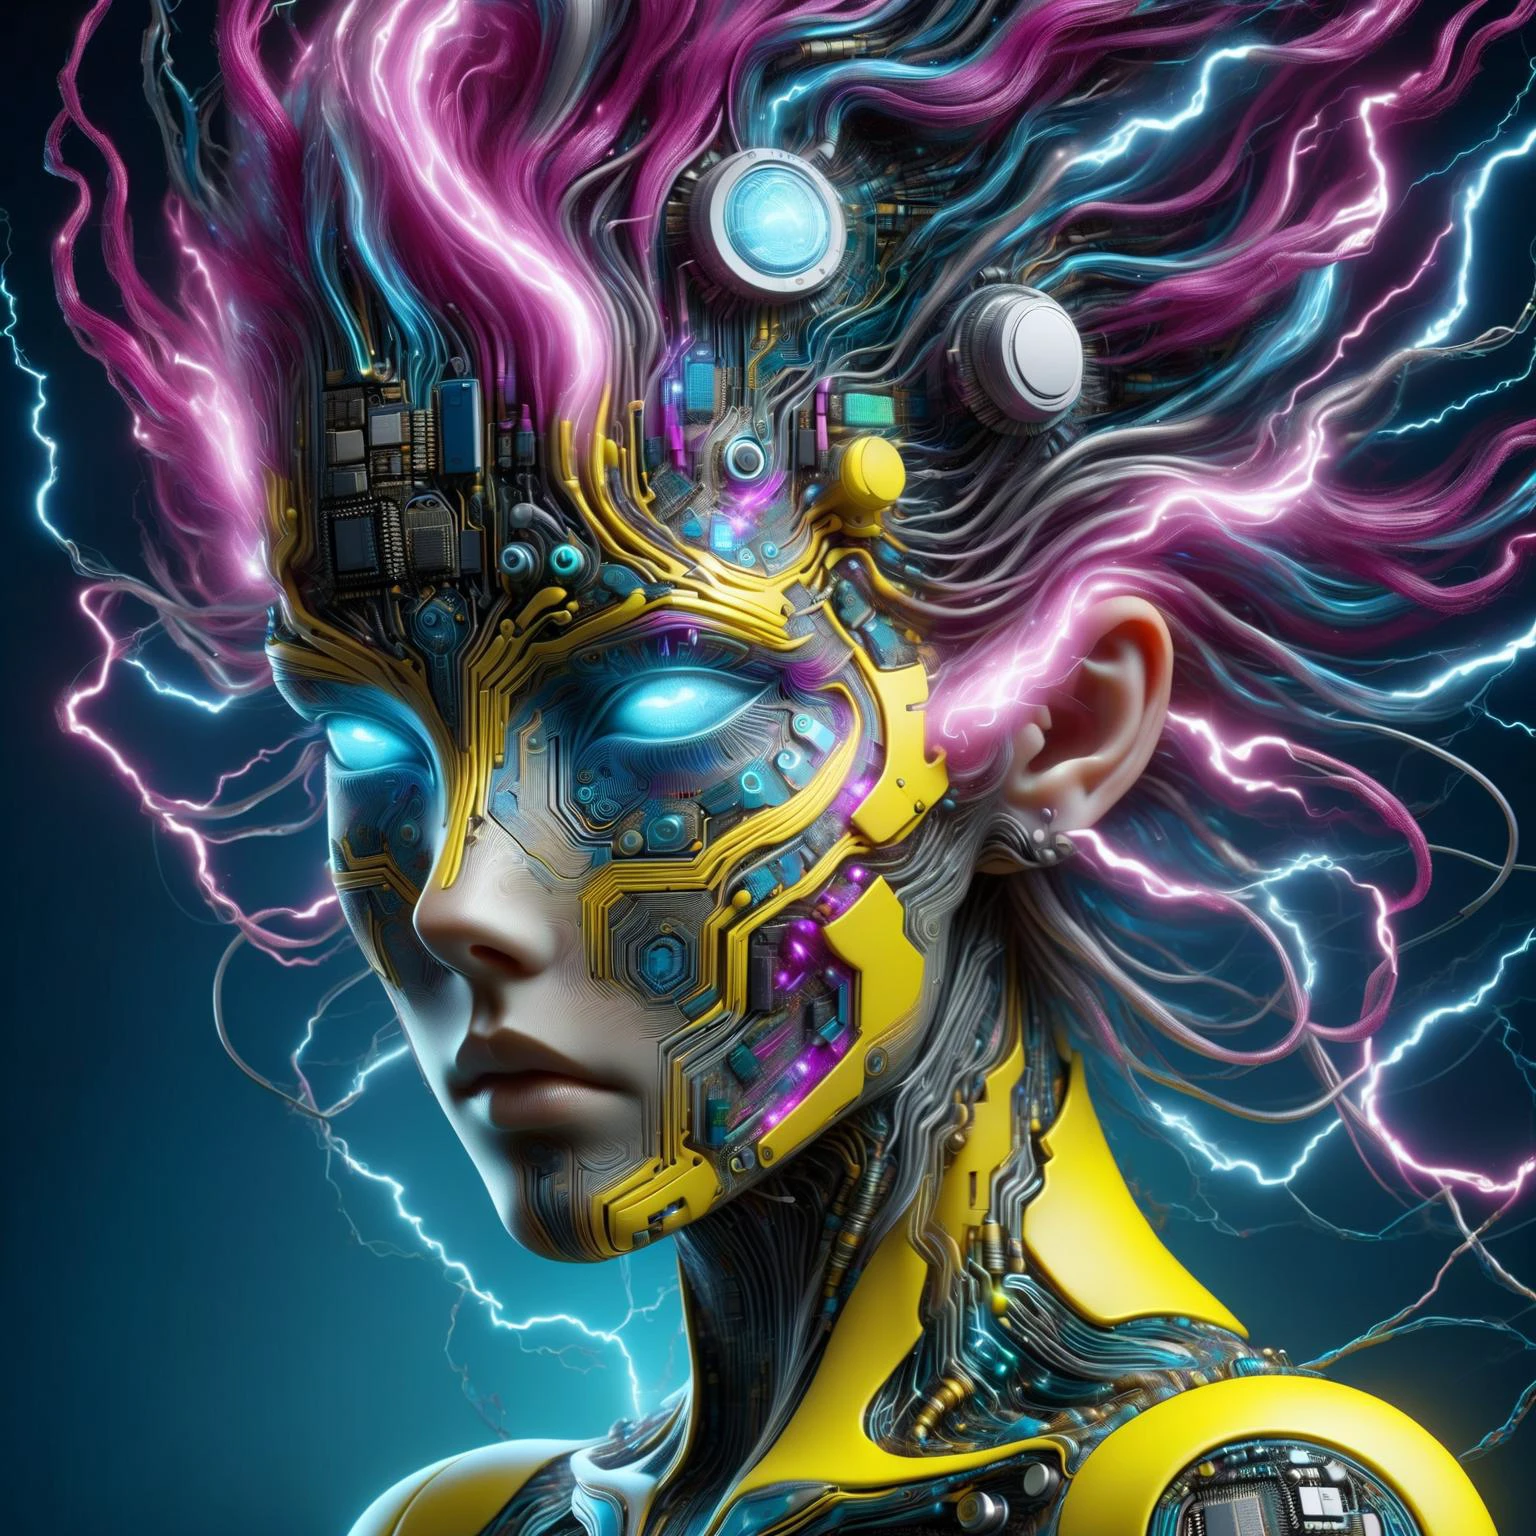 a cabeça de uma mulher feita de semicondutor ral no estilo de Aaron Horkey, no estilo de Alphonse Mucha DonMW15pXL, relâmpago amarelo neon, relâmpago azul-petróleo néon, relâmpago neon magenta, flutuando, astral, (Obra de arte:1.2), melhor qualidade, (hiperdetalhado, mais detalhado:1.2), texturas de alta resolução